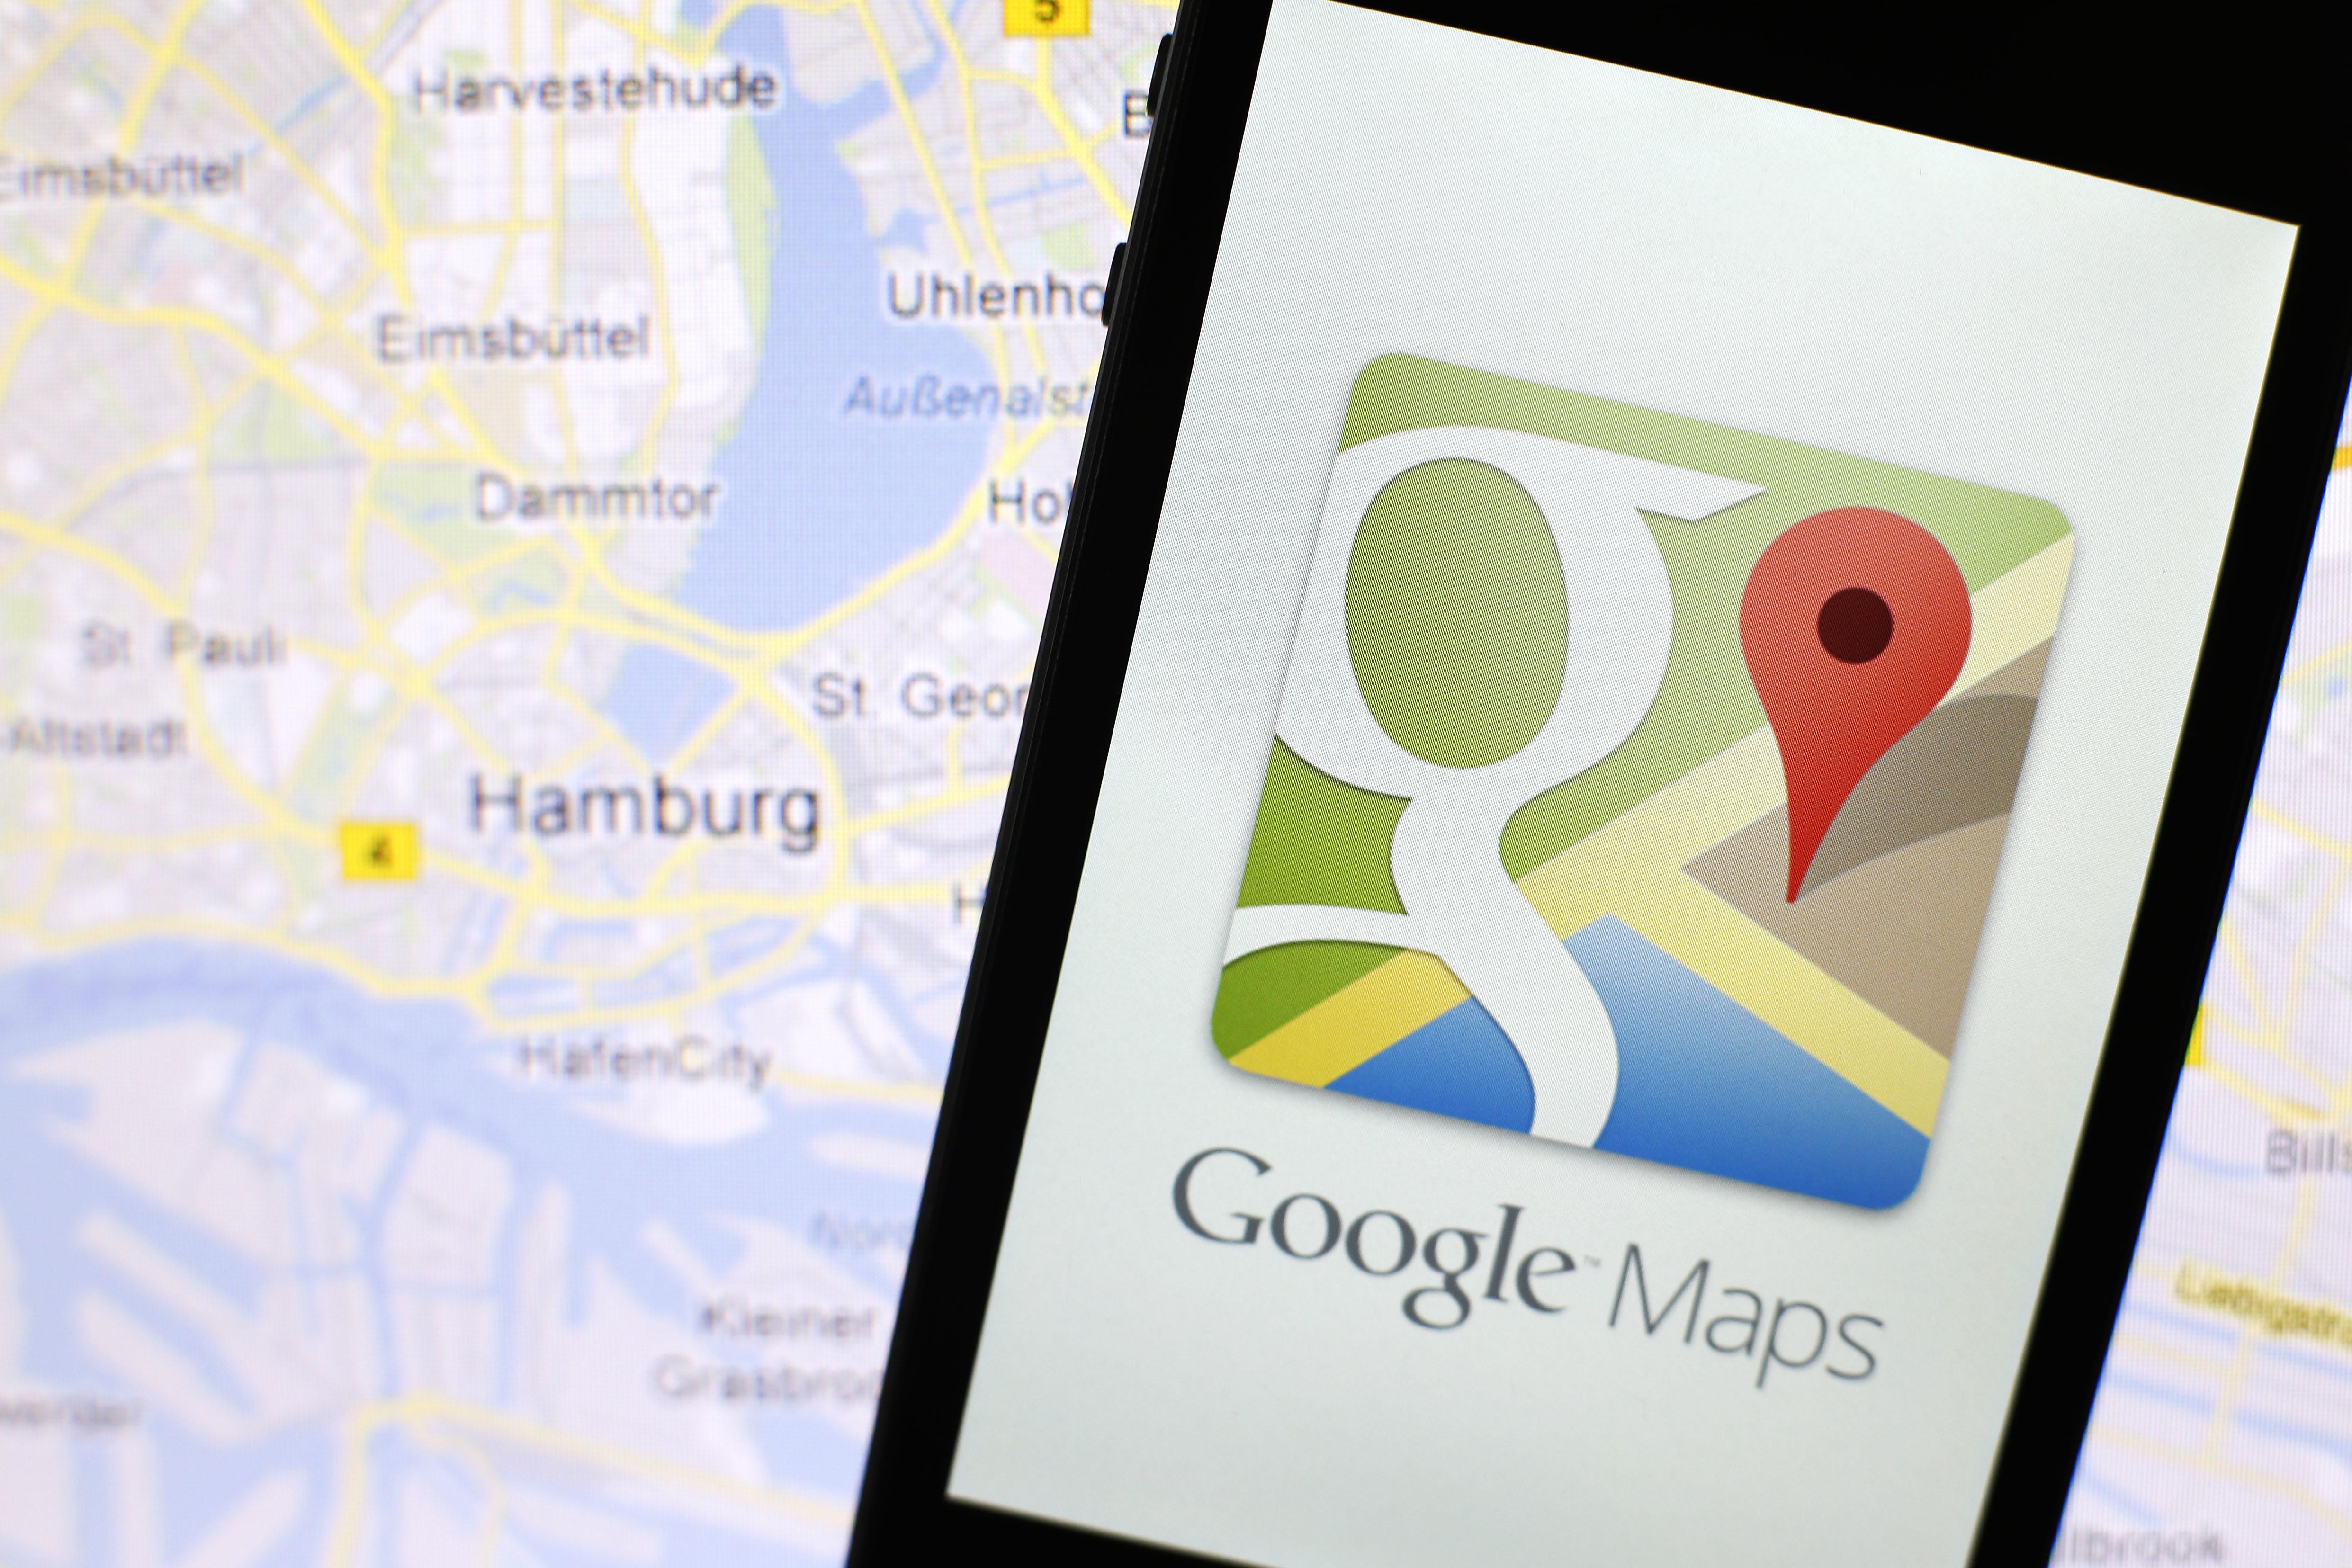 Google Map Maker   - который позволяет пользователям предлагать правки и модификации в базу данных карты - был удален